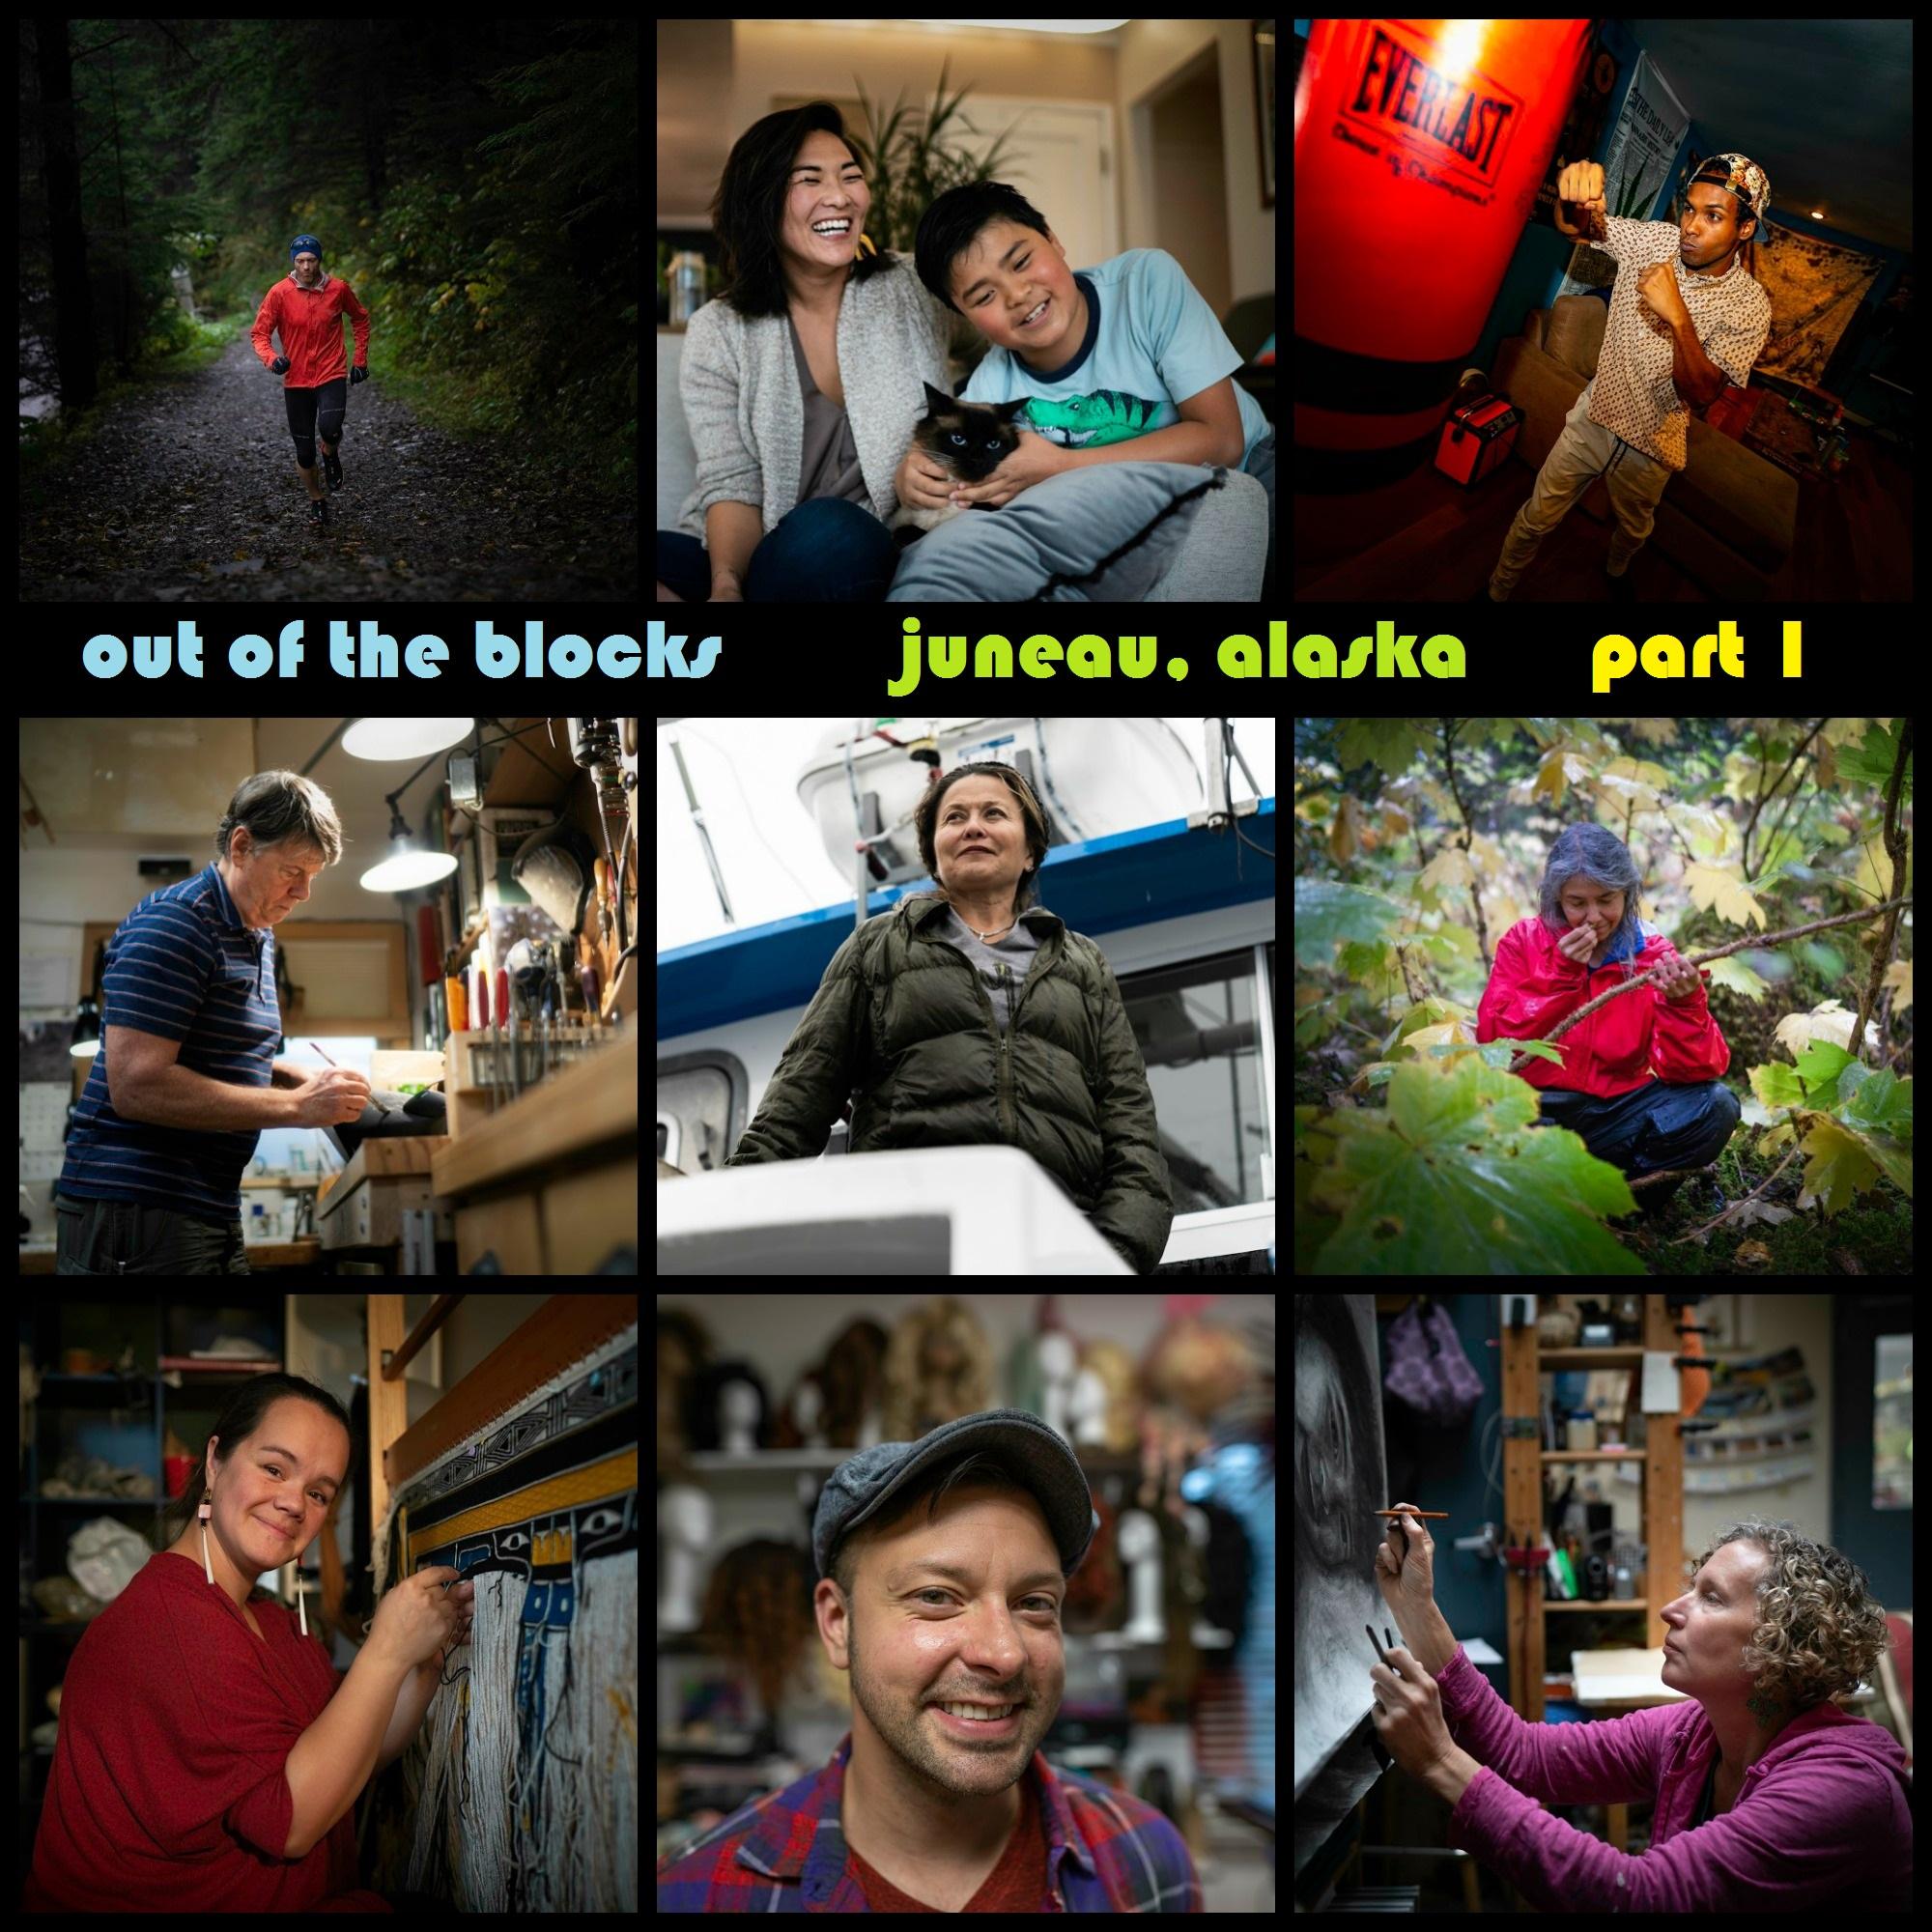 Thumbnail for "Juneau, Alaska, part 1: We Belong to Each Other".